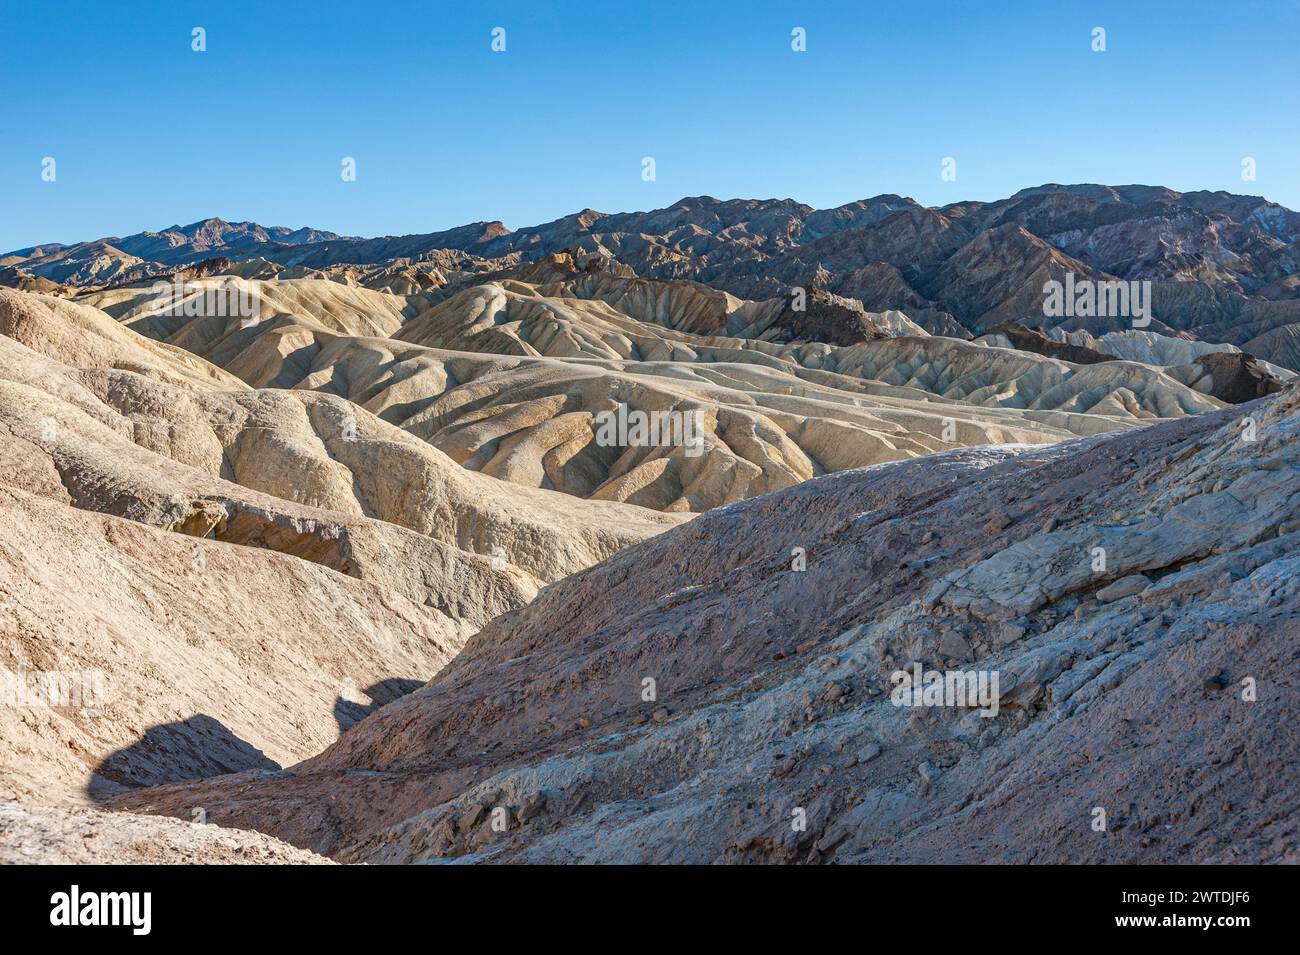 Badlands, parc national de la Vallée de la mort, Californie, États-Unis Banque D'Images